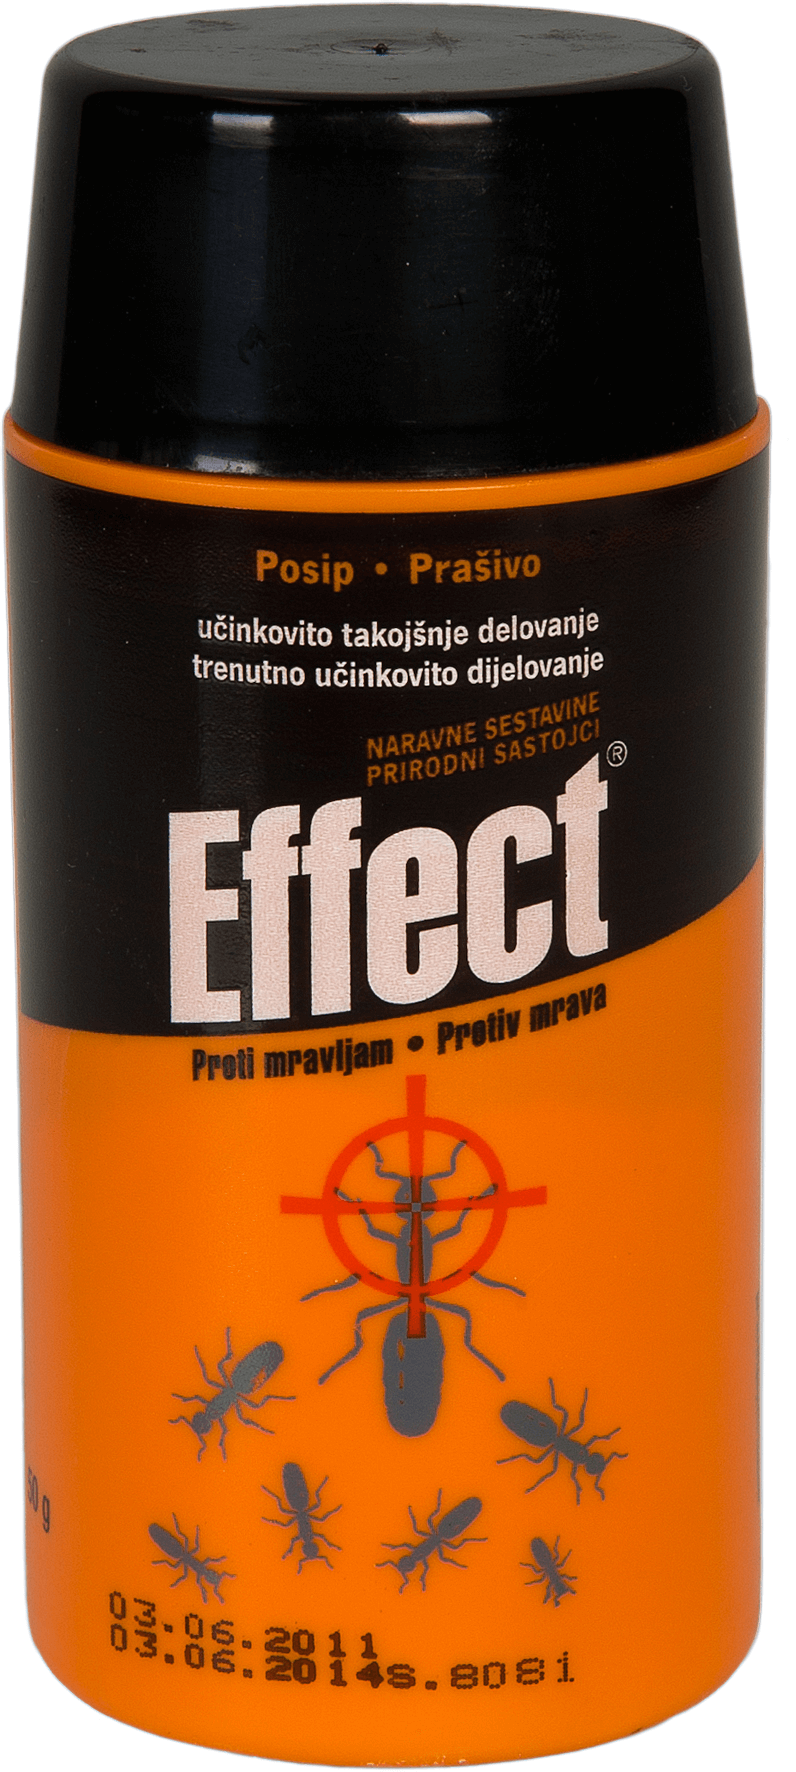 Effect 100. Инсектицидный порошок. Инсектицидный порошок экостоп. Инсектицидное устройство. Инсектицидное мыло.